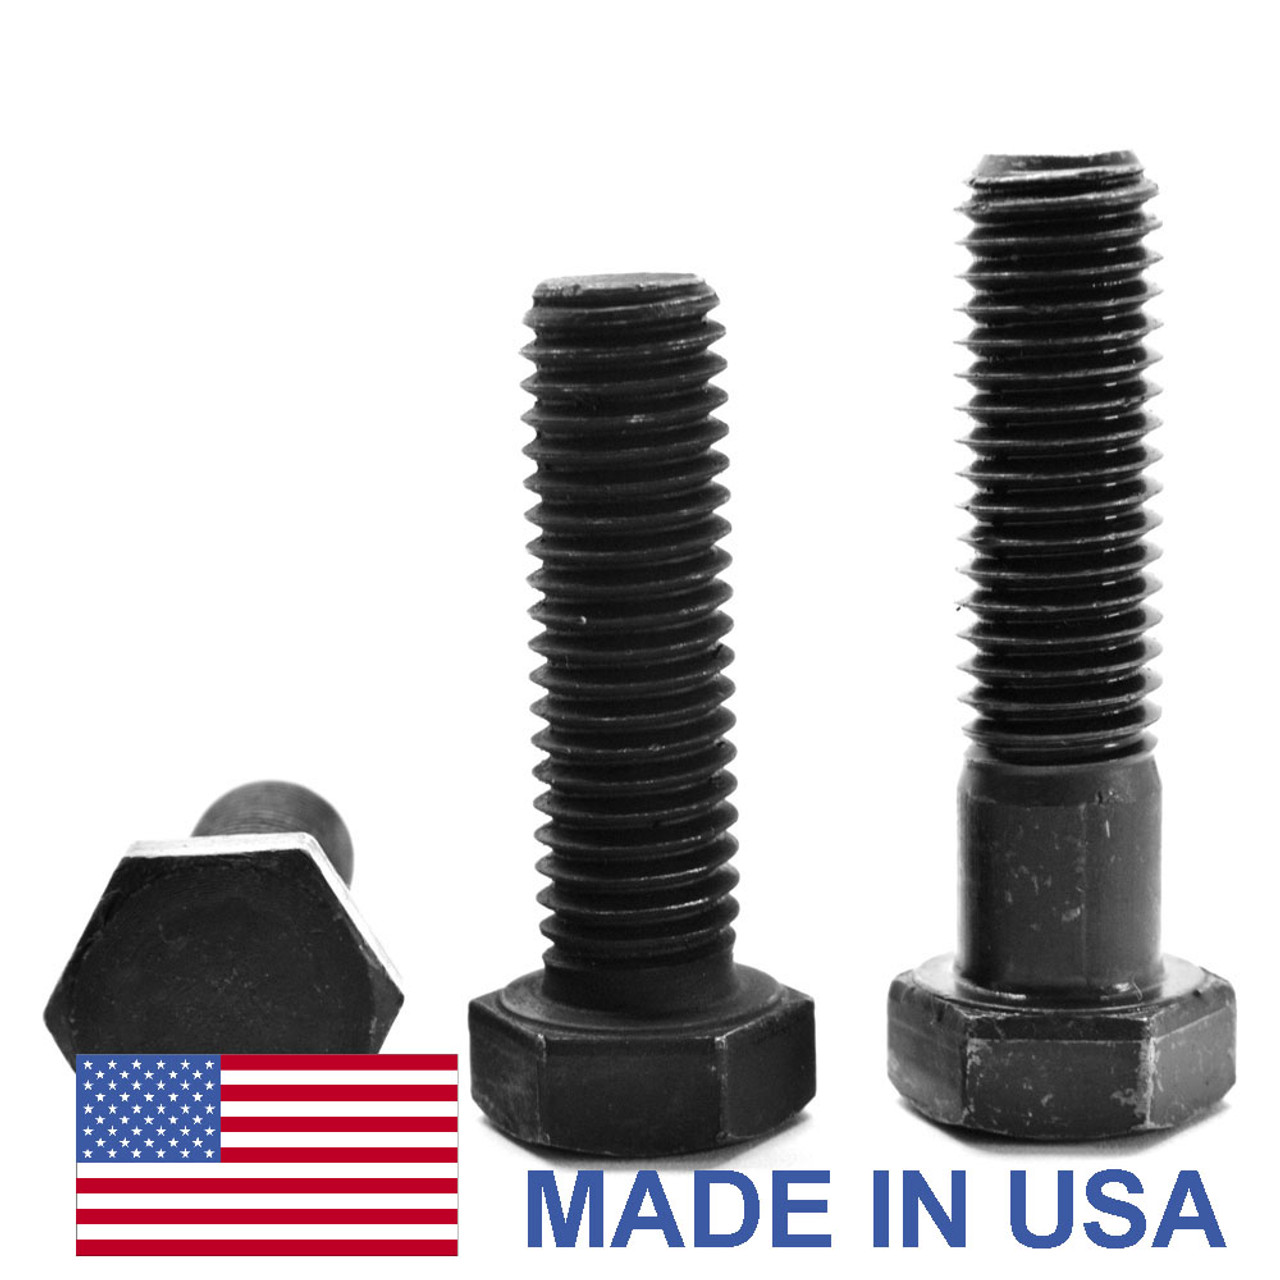 1"-14 x 7 1/2" (PT) UNS Thread Grade 5 Hex Cap Screw (Bolt) - USA Medium Carbon Steel Black Oxide